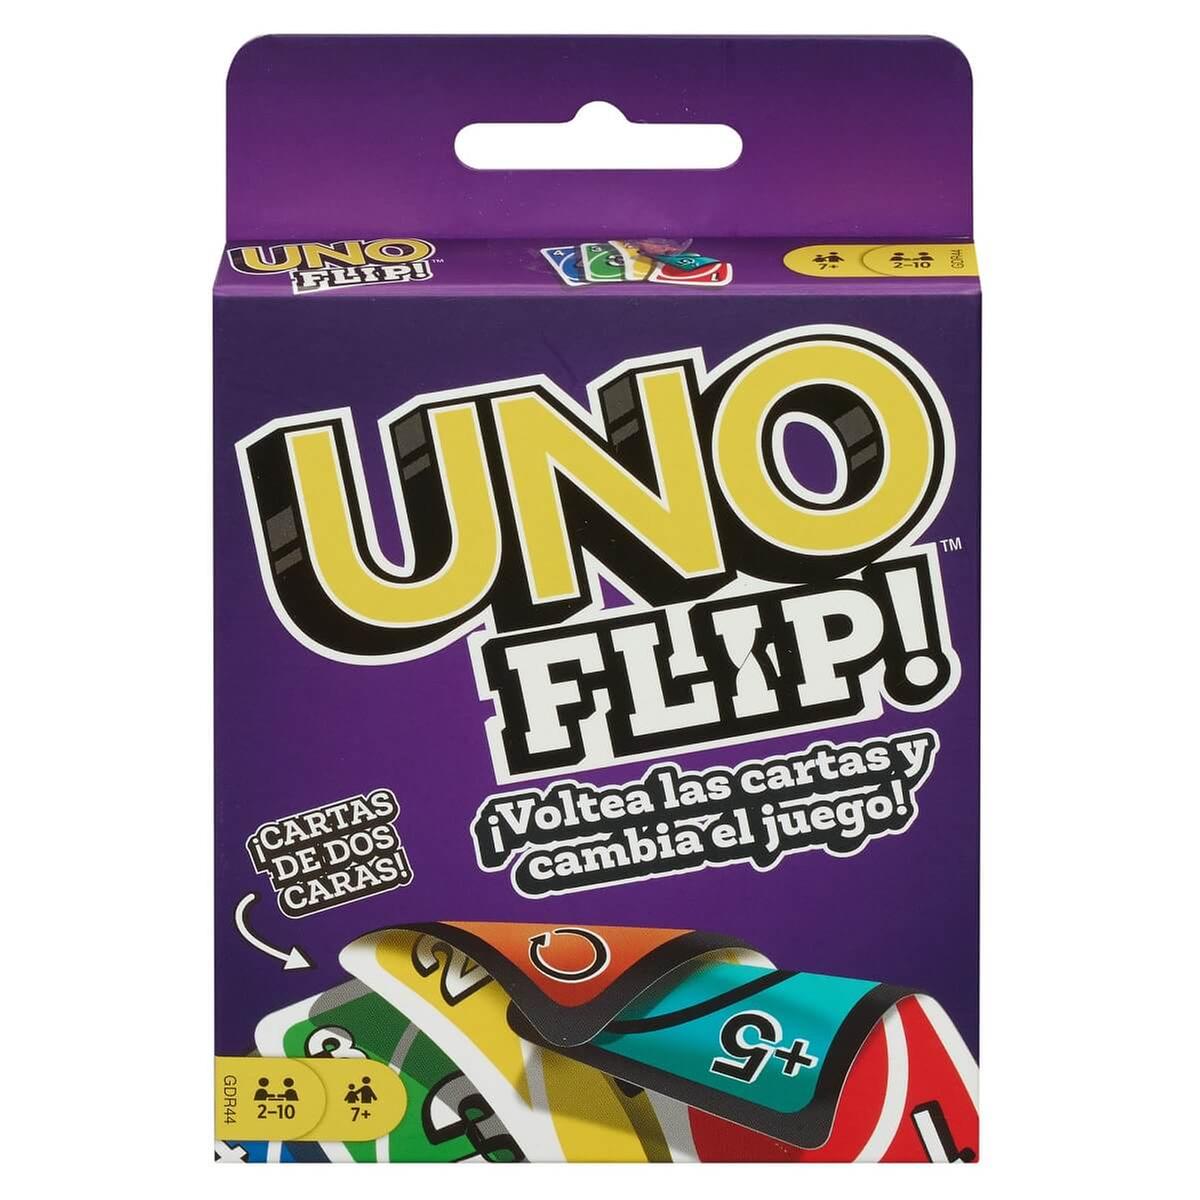 Não é necessário gritar 'Uno!' na última carta, diz perfil do jogo